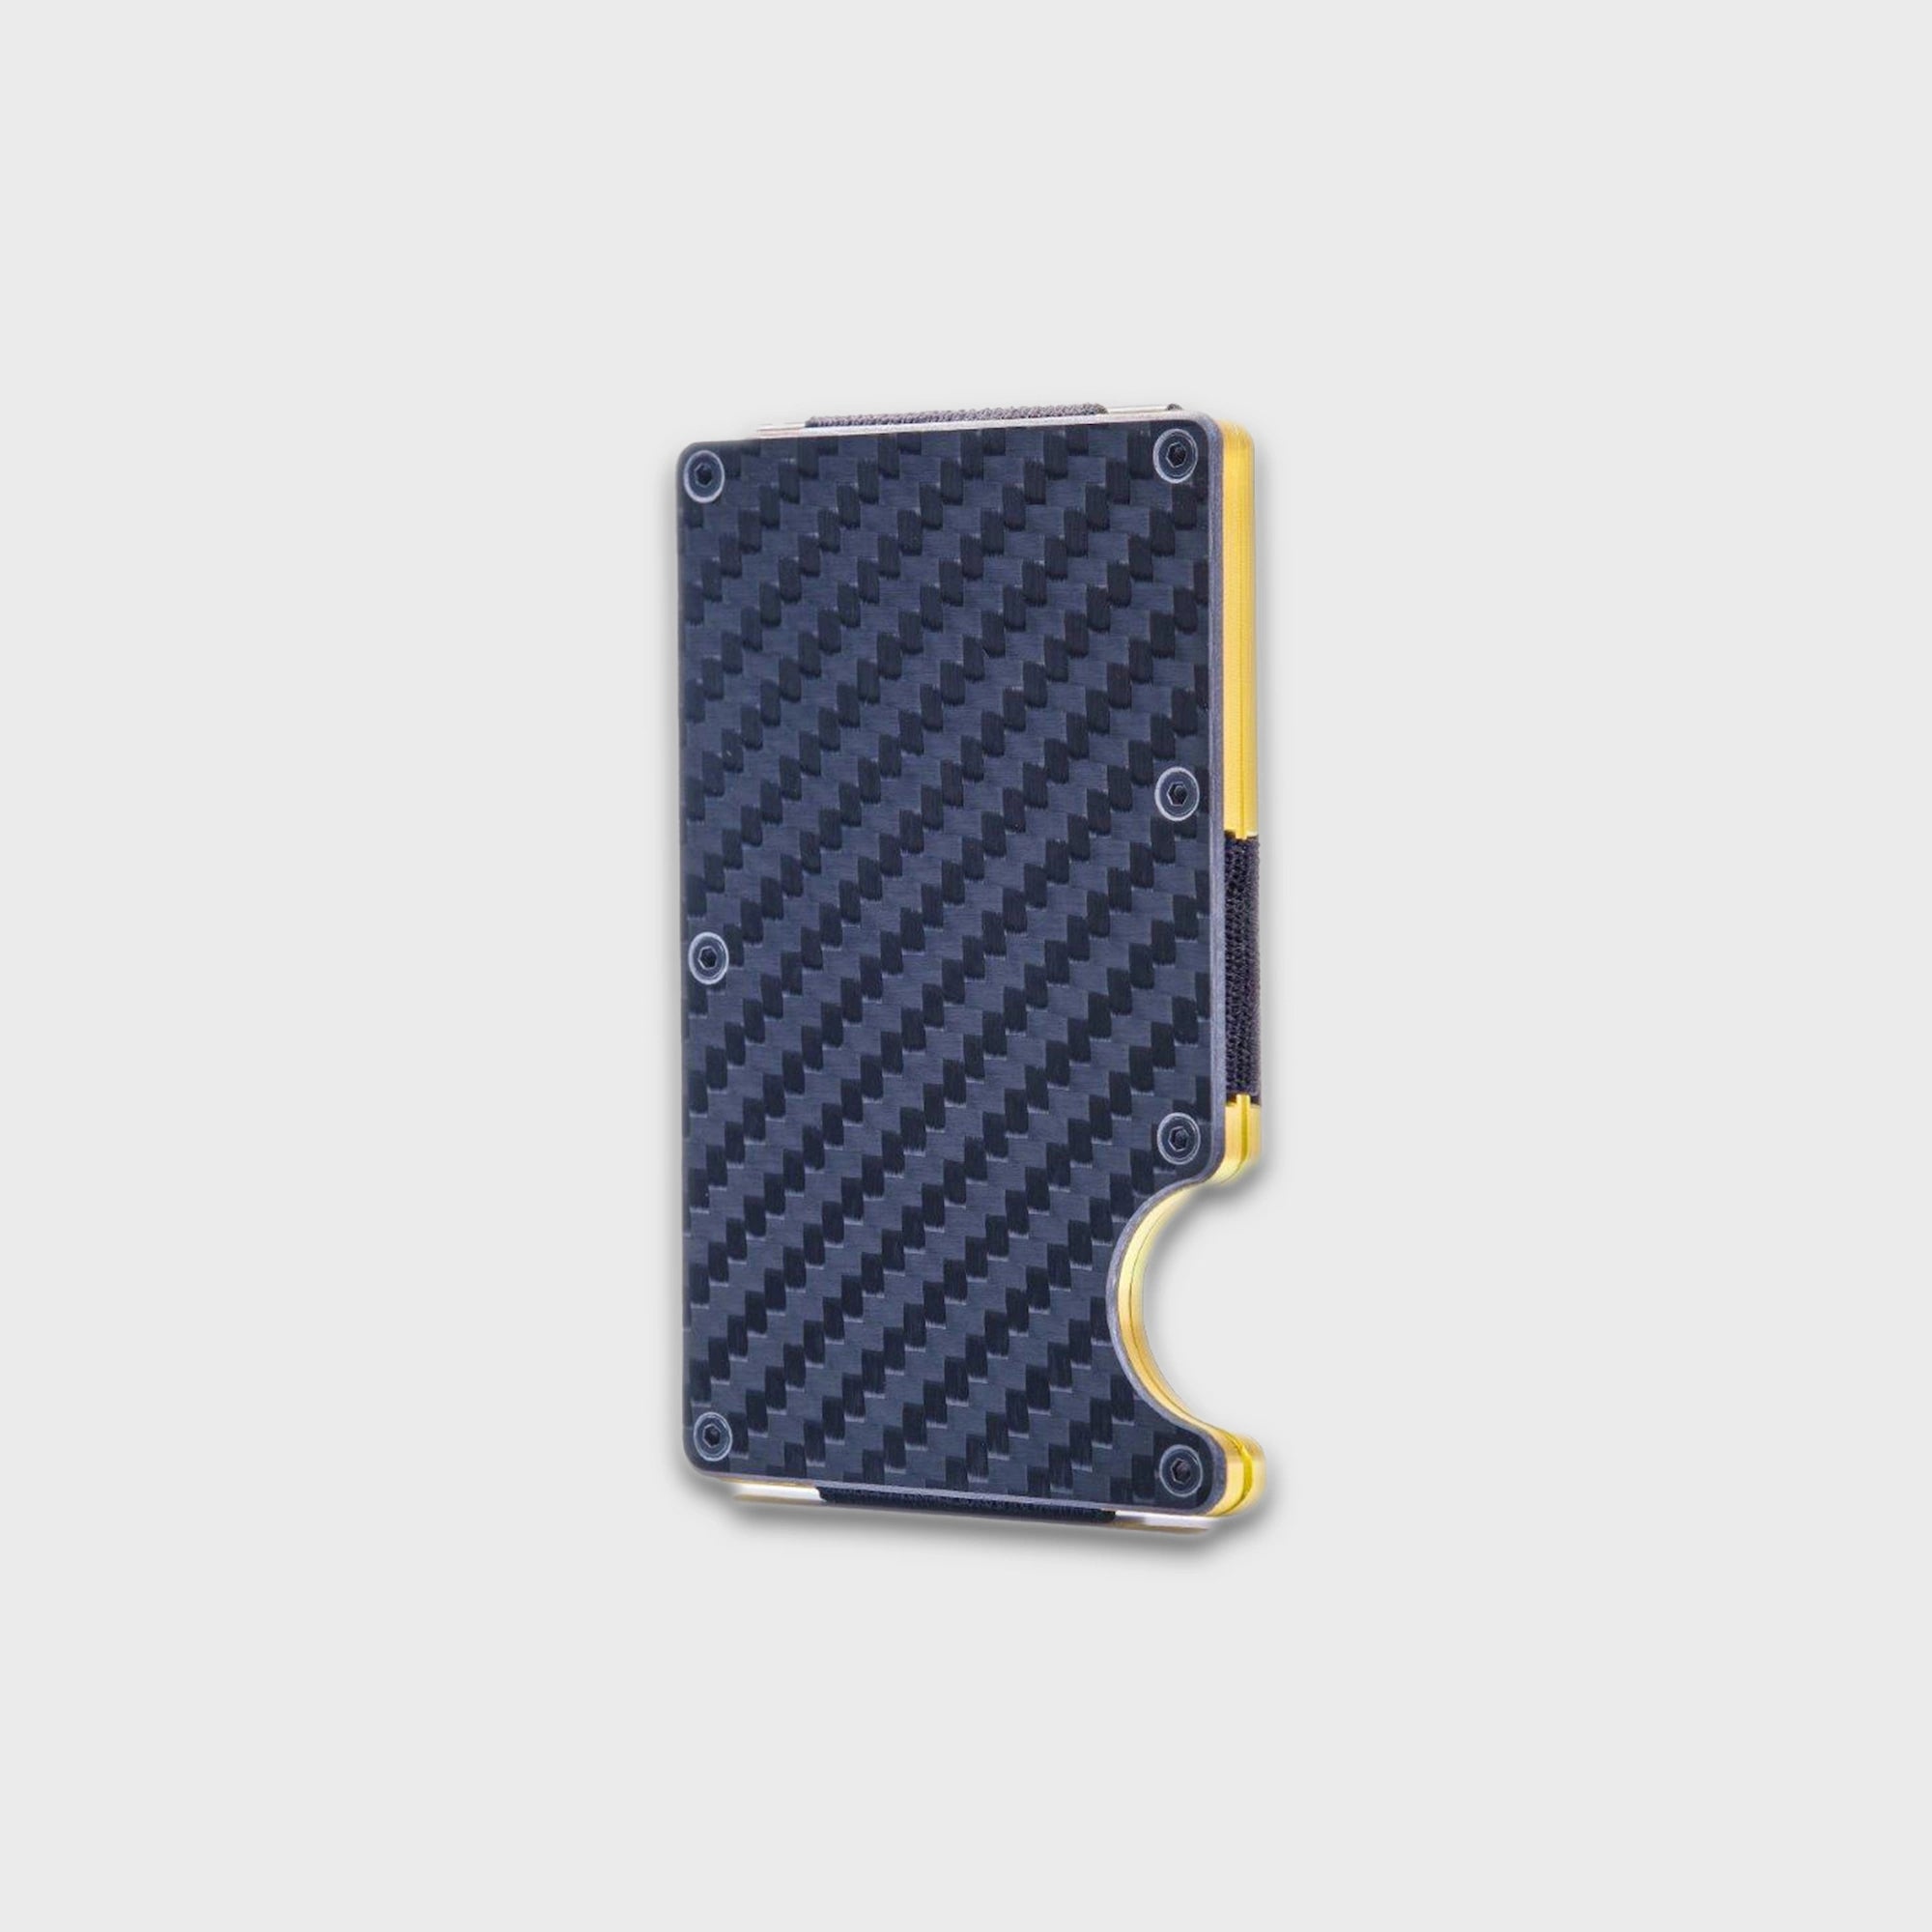 Produktfotografie der Vorderseite  des Tech Wallets von Leanschi aus Carbon mit einem gelben Aluminiumkern